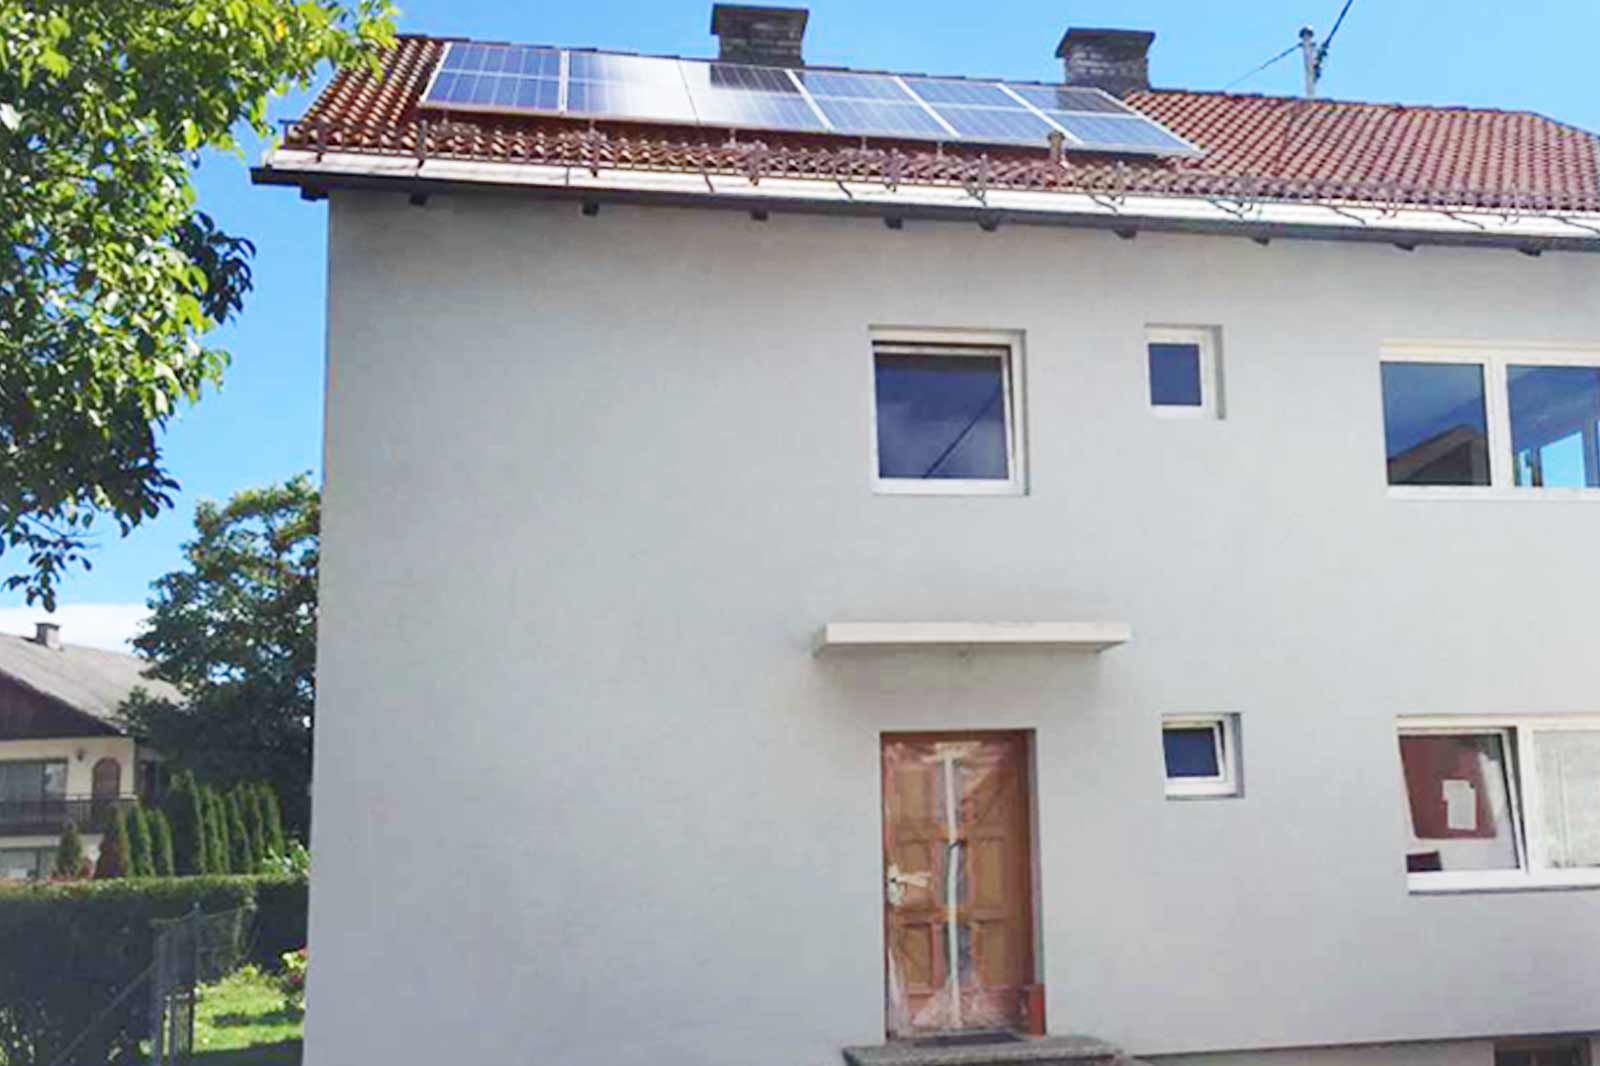 Weißes Einfamilienhaus mit Photovoltaikanlage am Dach